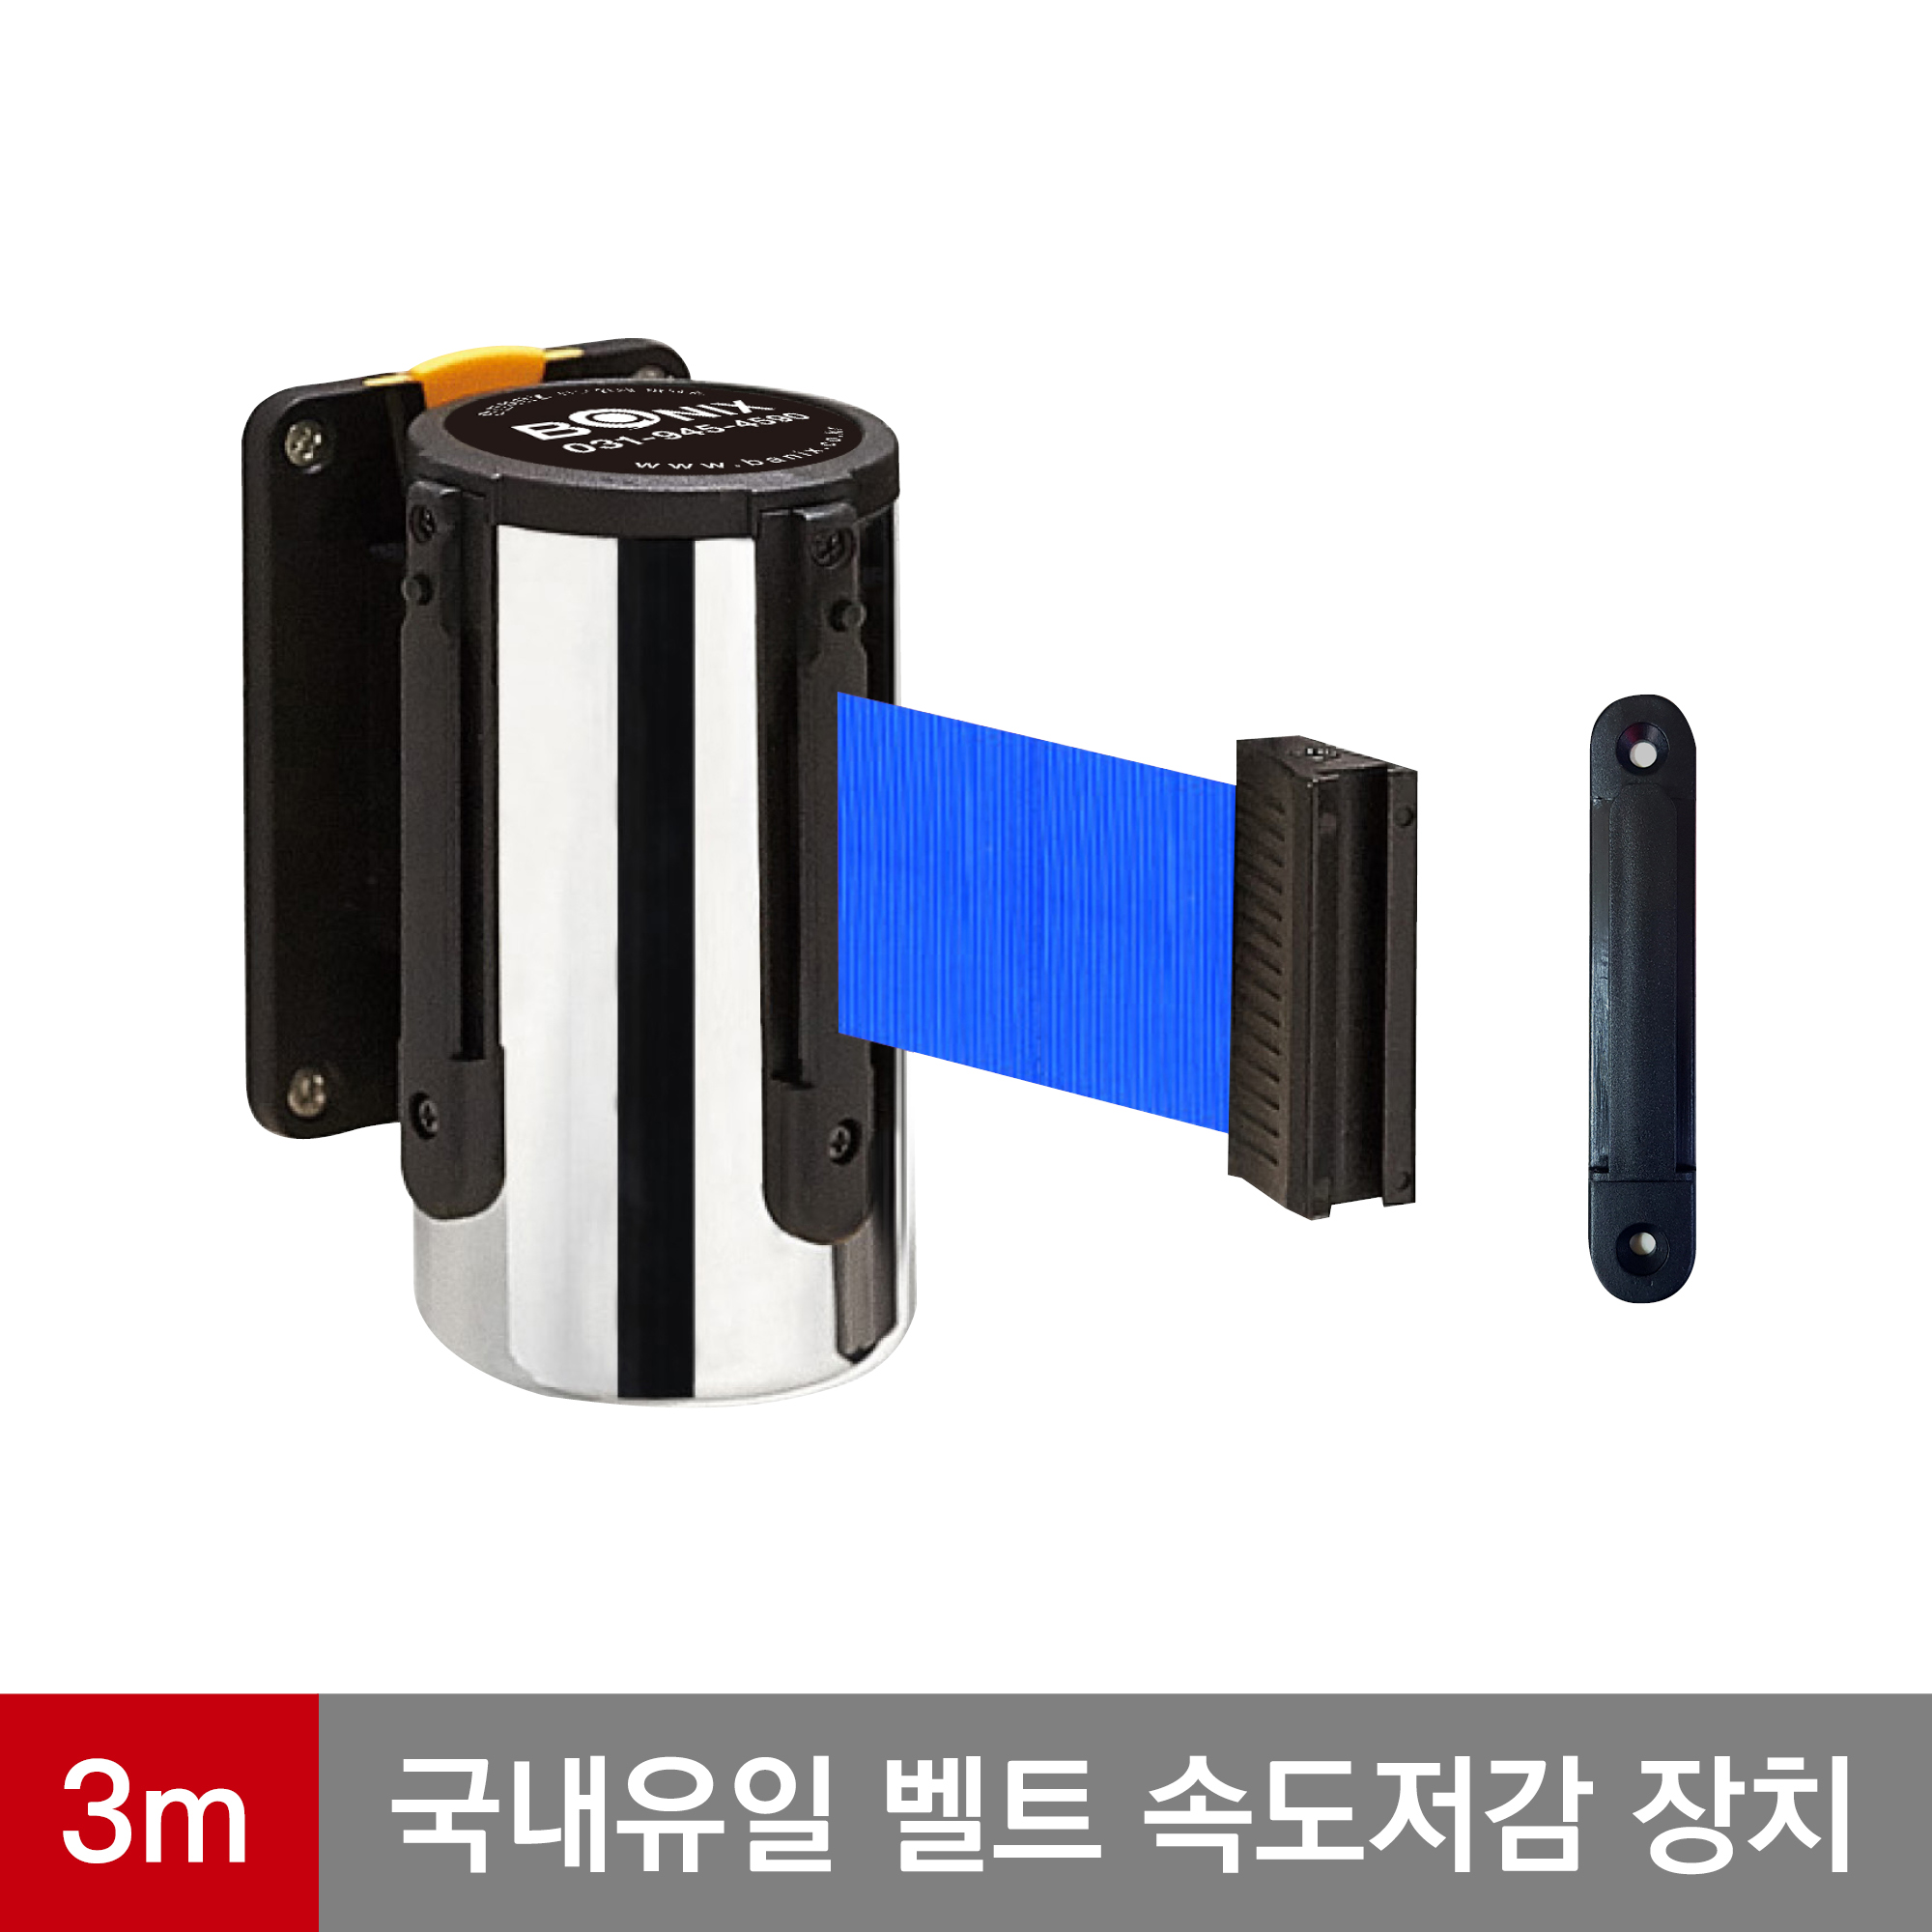 바닉스 벽걸이형 안전차단봉 5cm 3M 프레임(실버) 안전장치 다기능 특허 가장 안전한 바닉스 벽걸이 차단봉 WST300-3m-blue